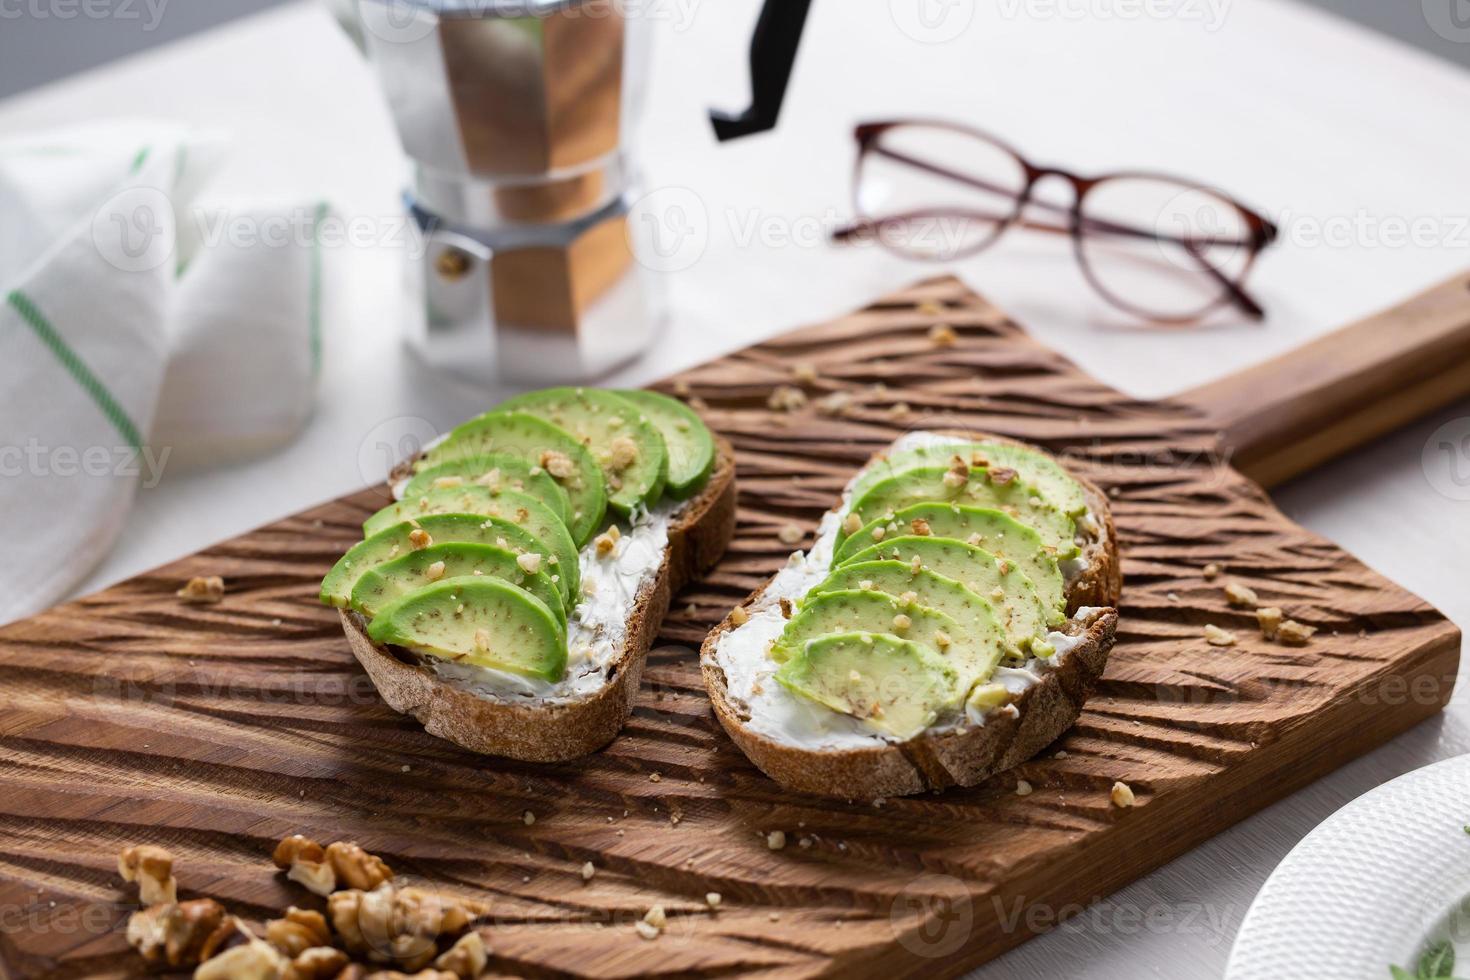 aguacate en rodajas sobre pan tostado con nueces. concepto de desayuno y comida saludable. foto